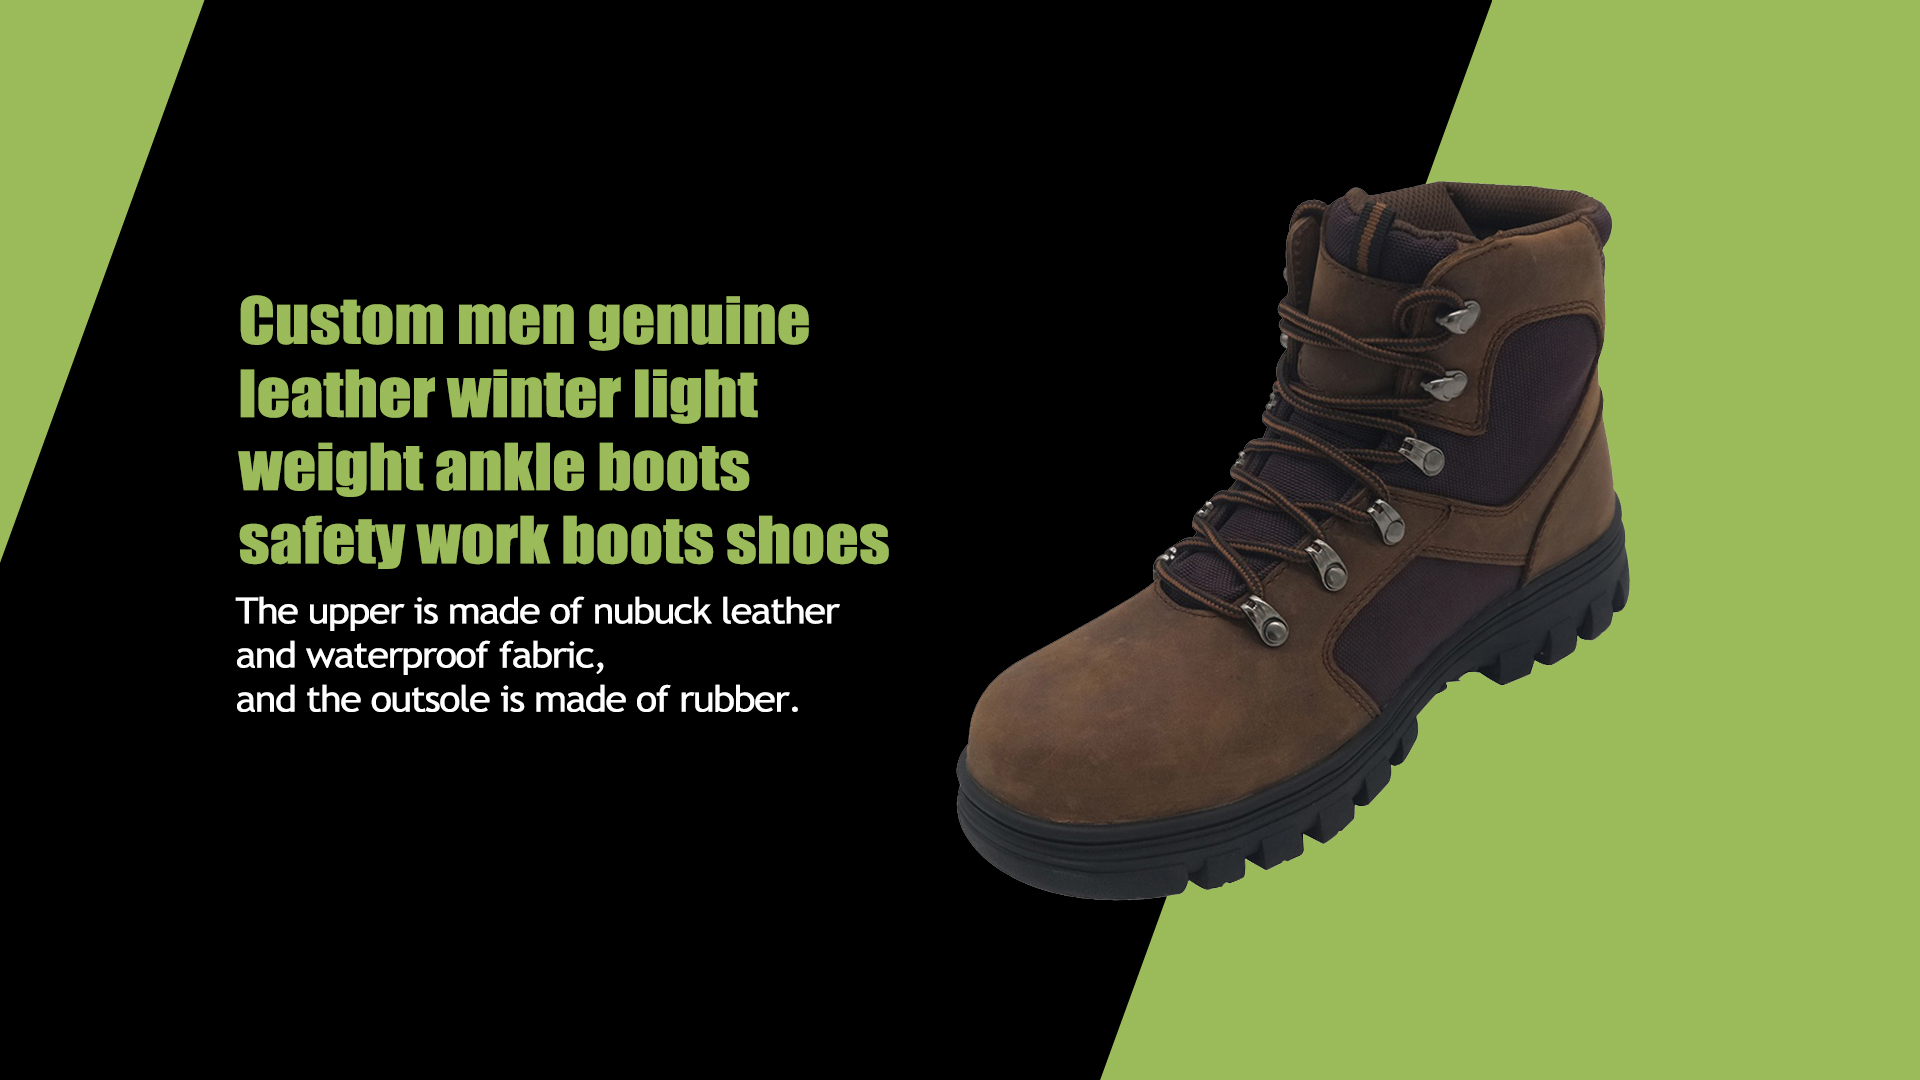 Benutzerdefinierte Herren echtes Leder Winter leichte Stiefeletten Sicherheitsarbeitsstiefel Schuhe